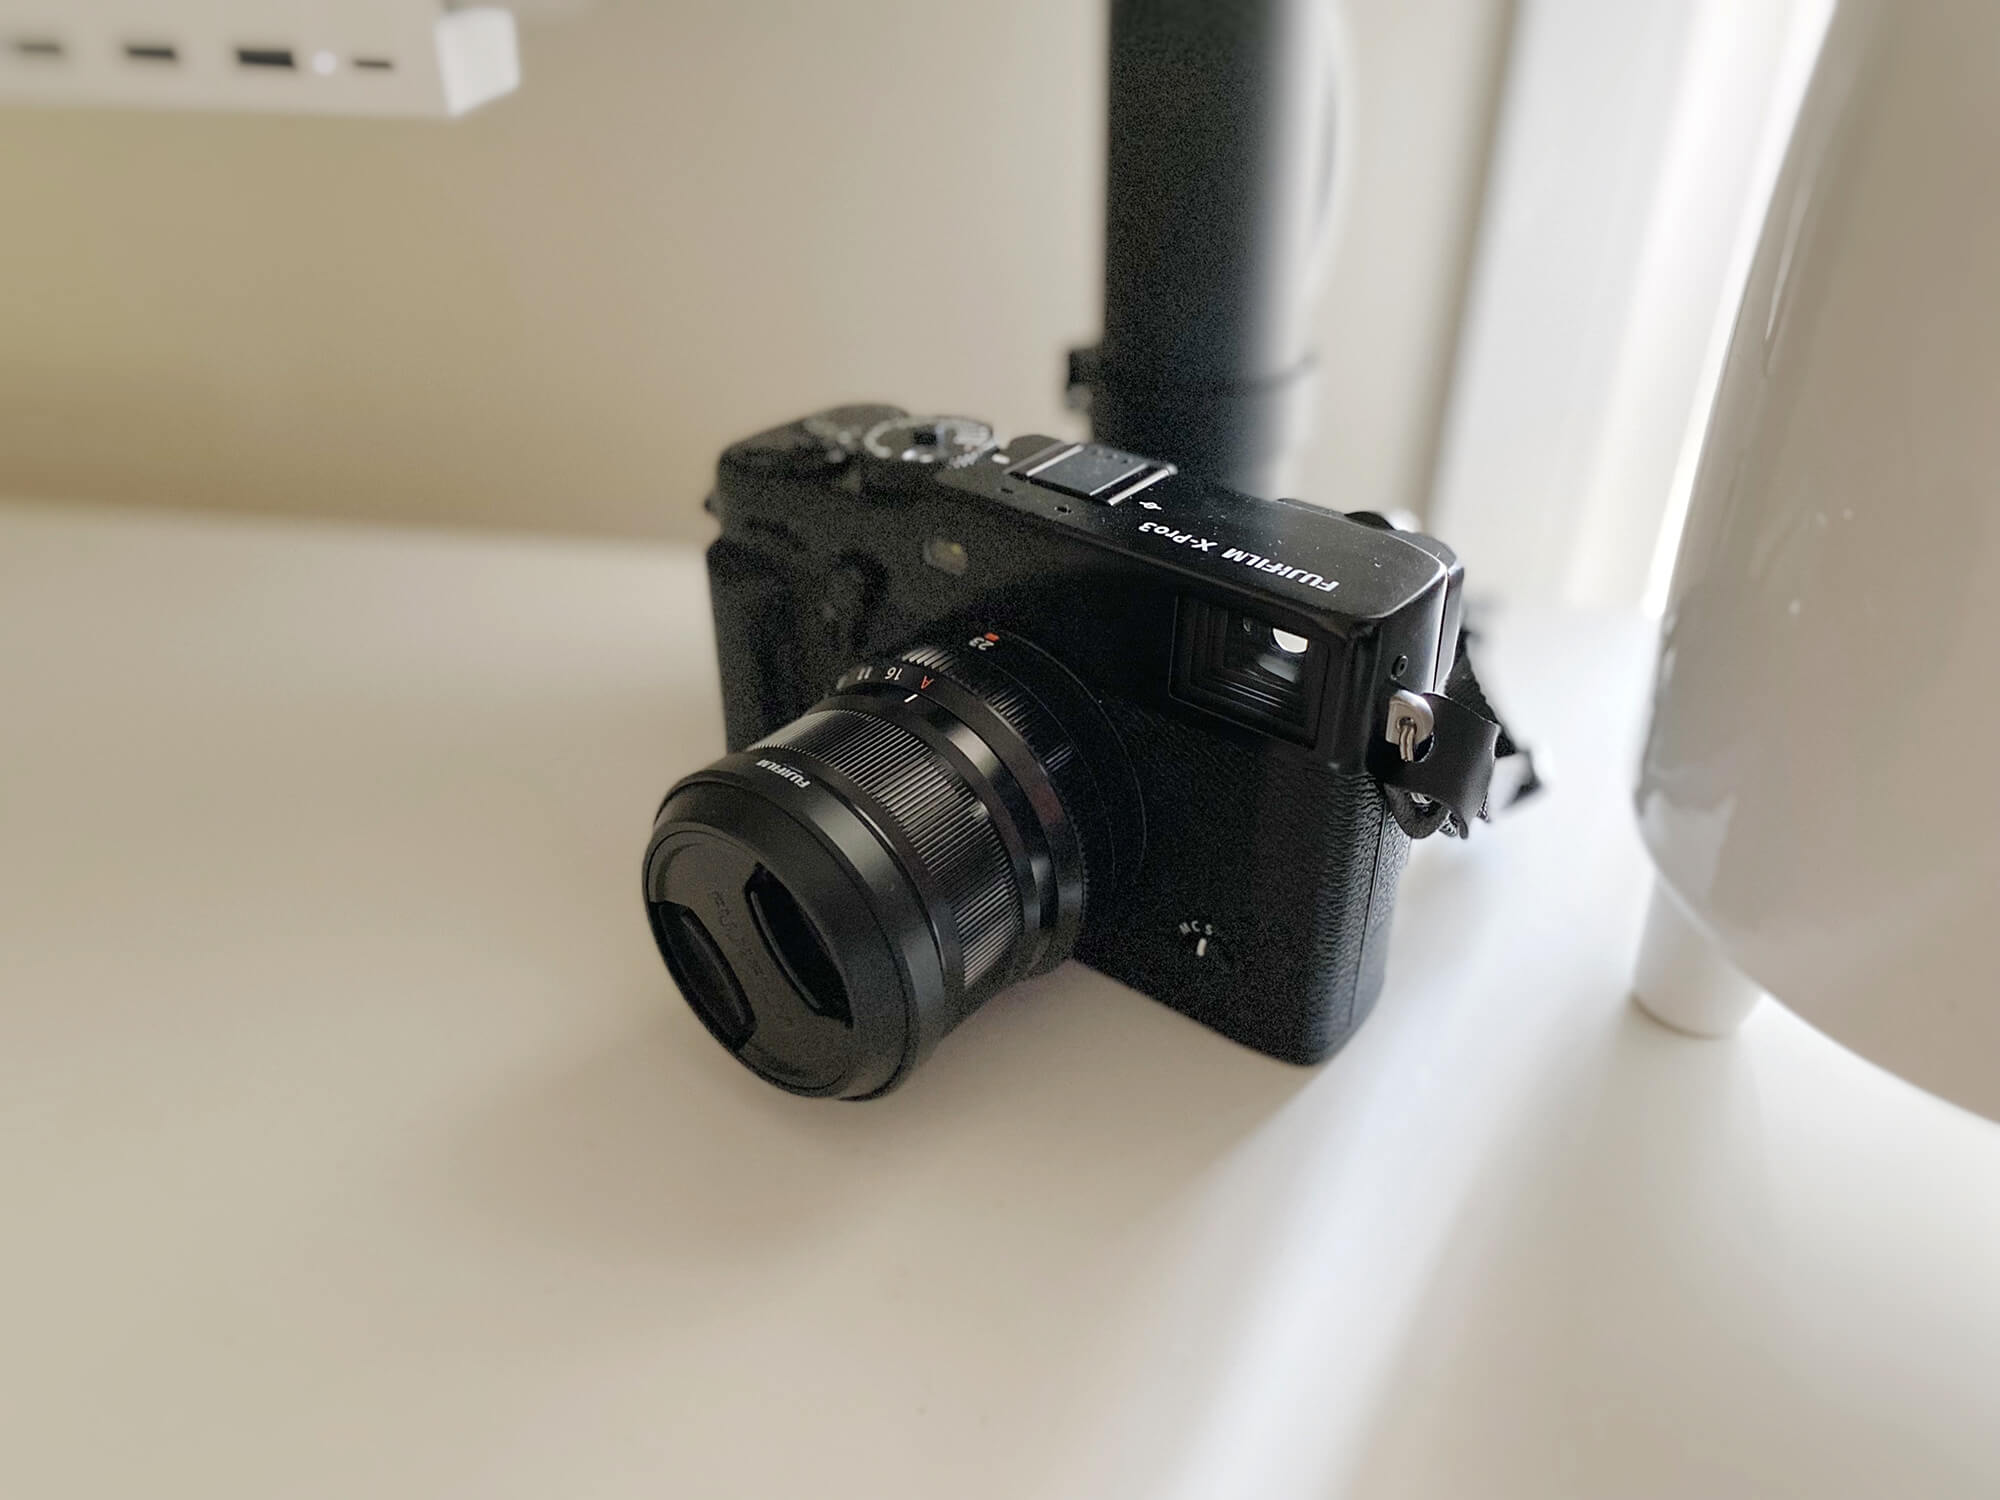 A Fujifilm X Pro 3 camera